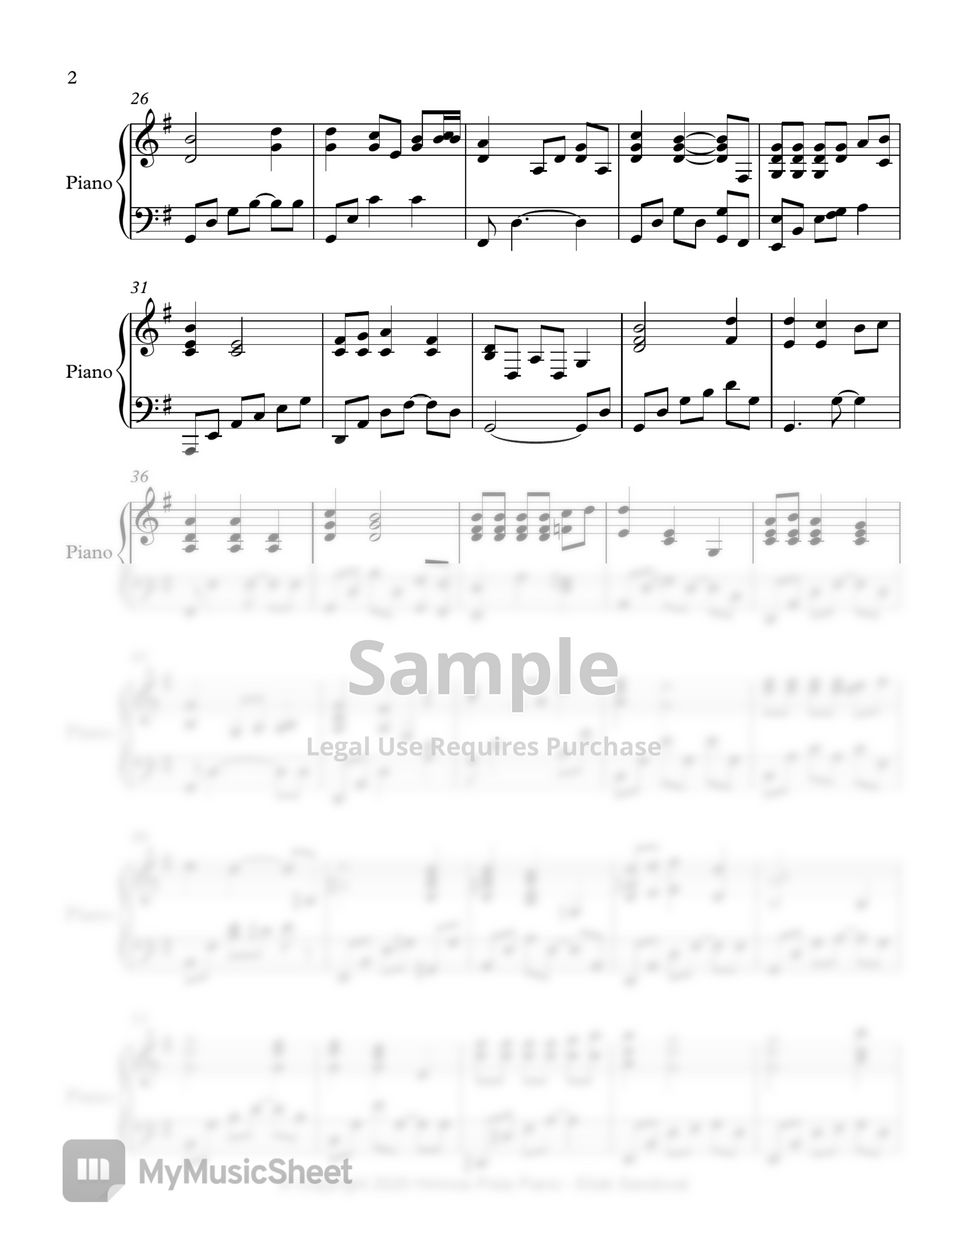 Himnario Adventista - Padre amado - Avanzada (Himno 368) Sheets by Himnos  Pista Piano